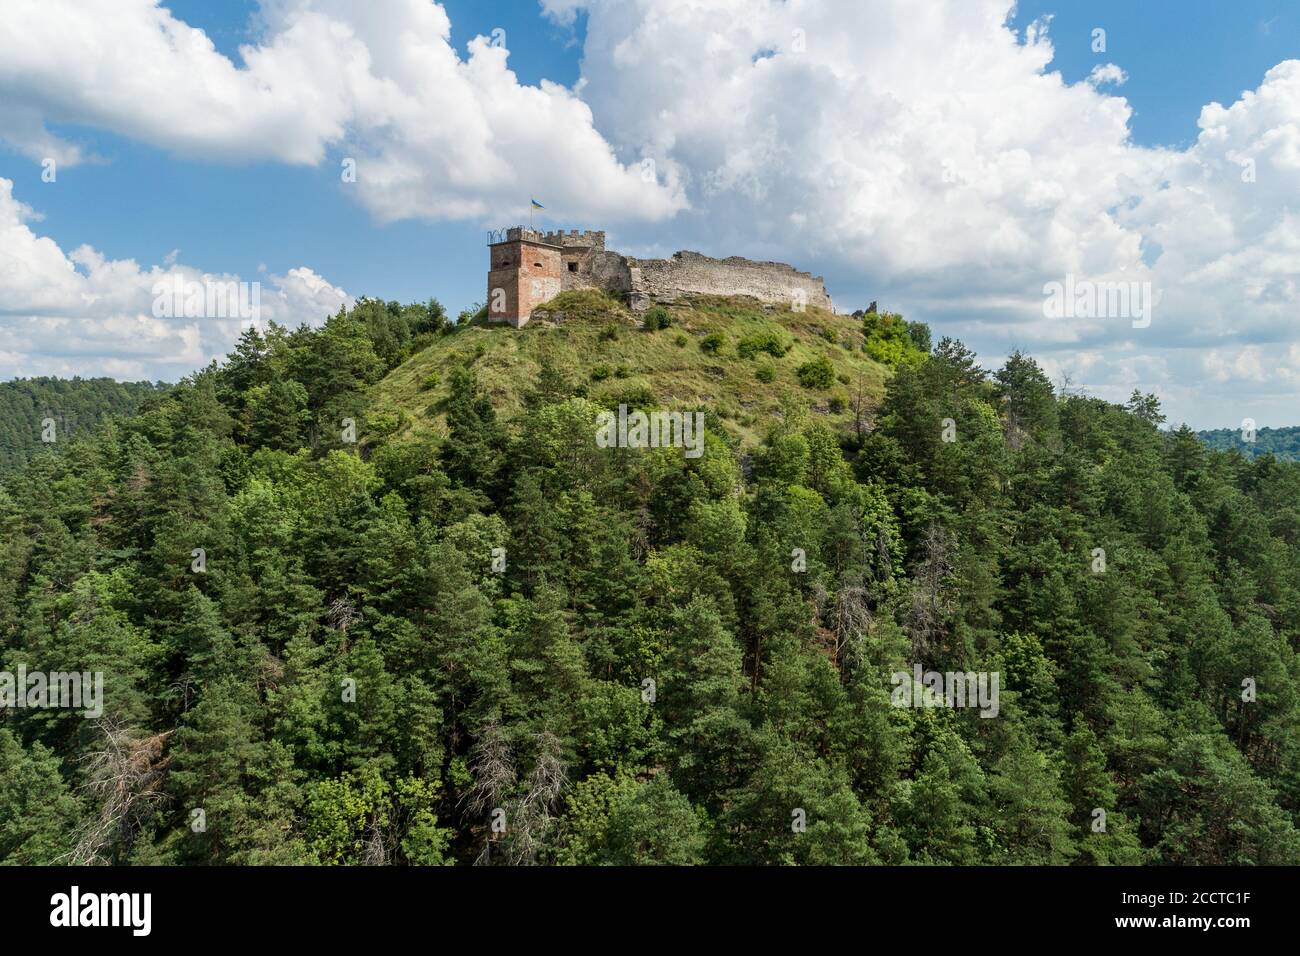 Les ruines du château de Kremenets sont situées en haut d'une colline dans la ville de Kremenets, région de Ternopil, Ukraine. Destinations touristiques et architecture historique en Ukraine Banque D'Images